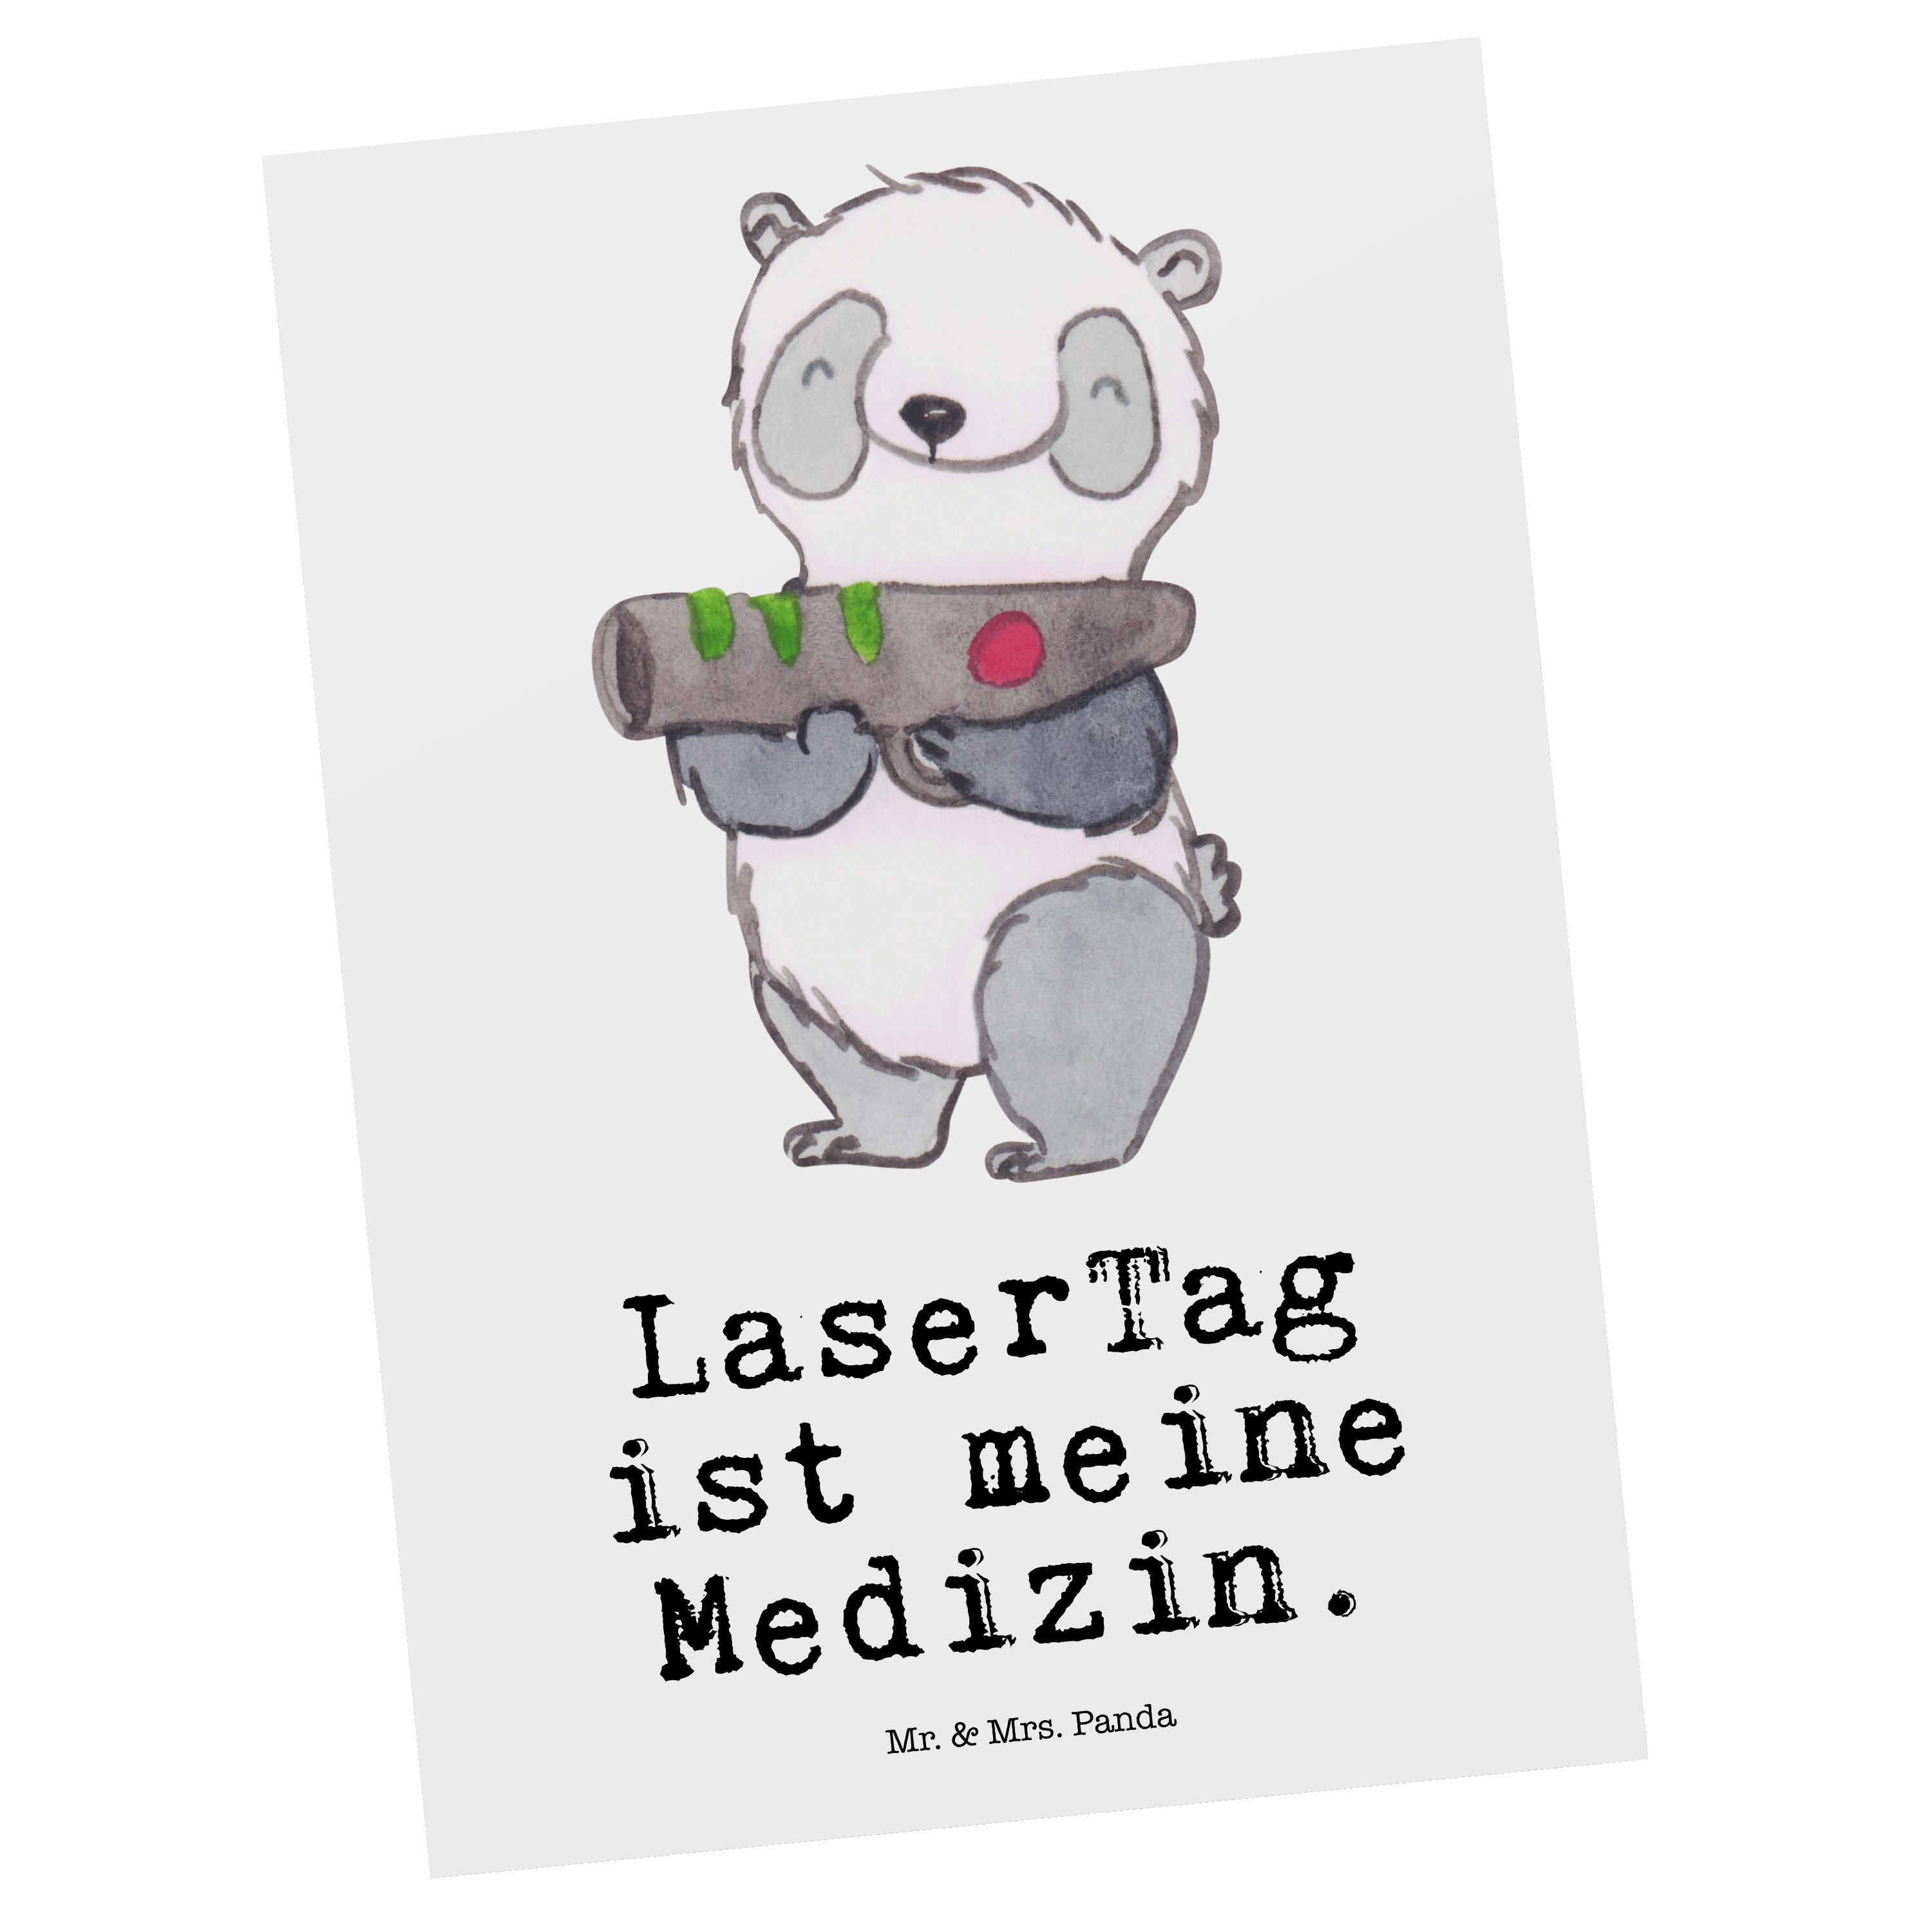 Mr. & Mrs. Panda Postkarte Panda LaserTag Medizin - Weiß - Geschenk, Hobby, Auszeichnung, Dankes